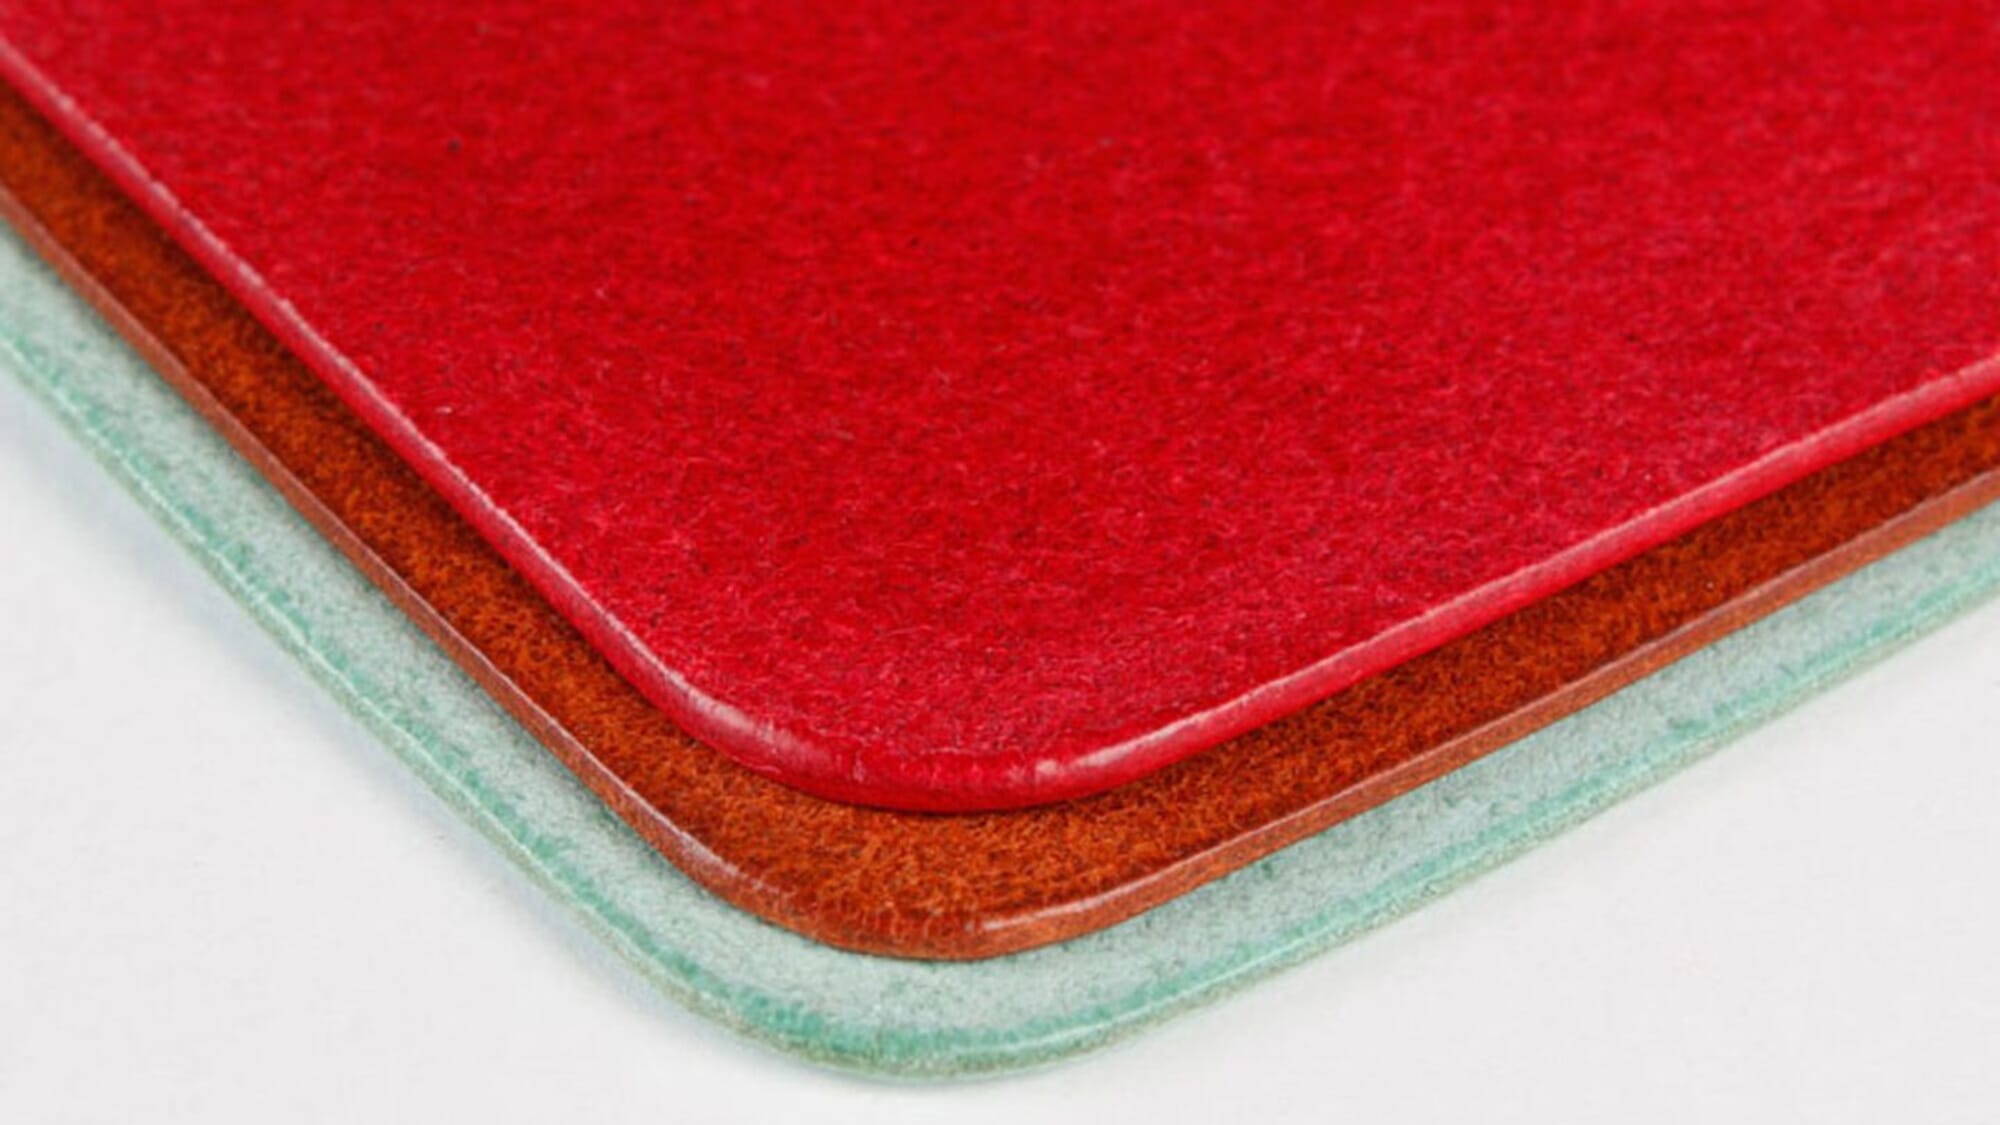 Craft Sha Leatherworking 1kg Toko Pro Japanese Leather Finish Burnishing  Gum, for Flesh Side & Edges of Leathercraft